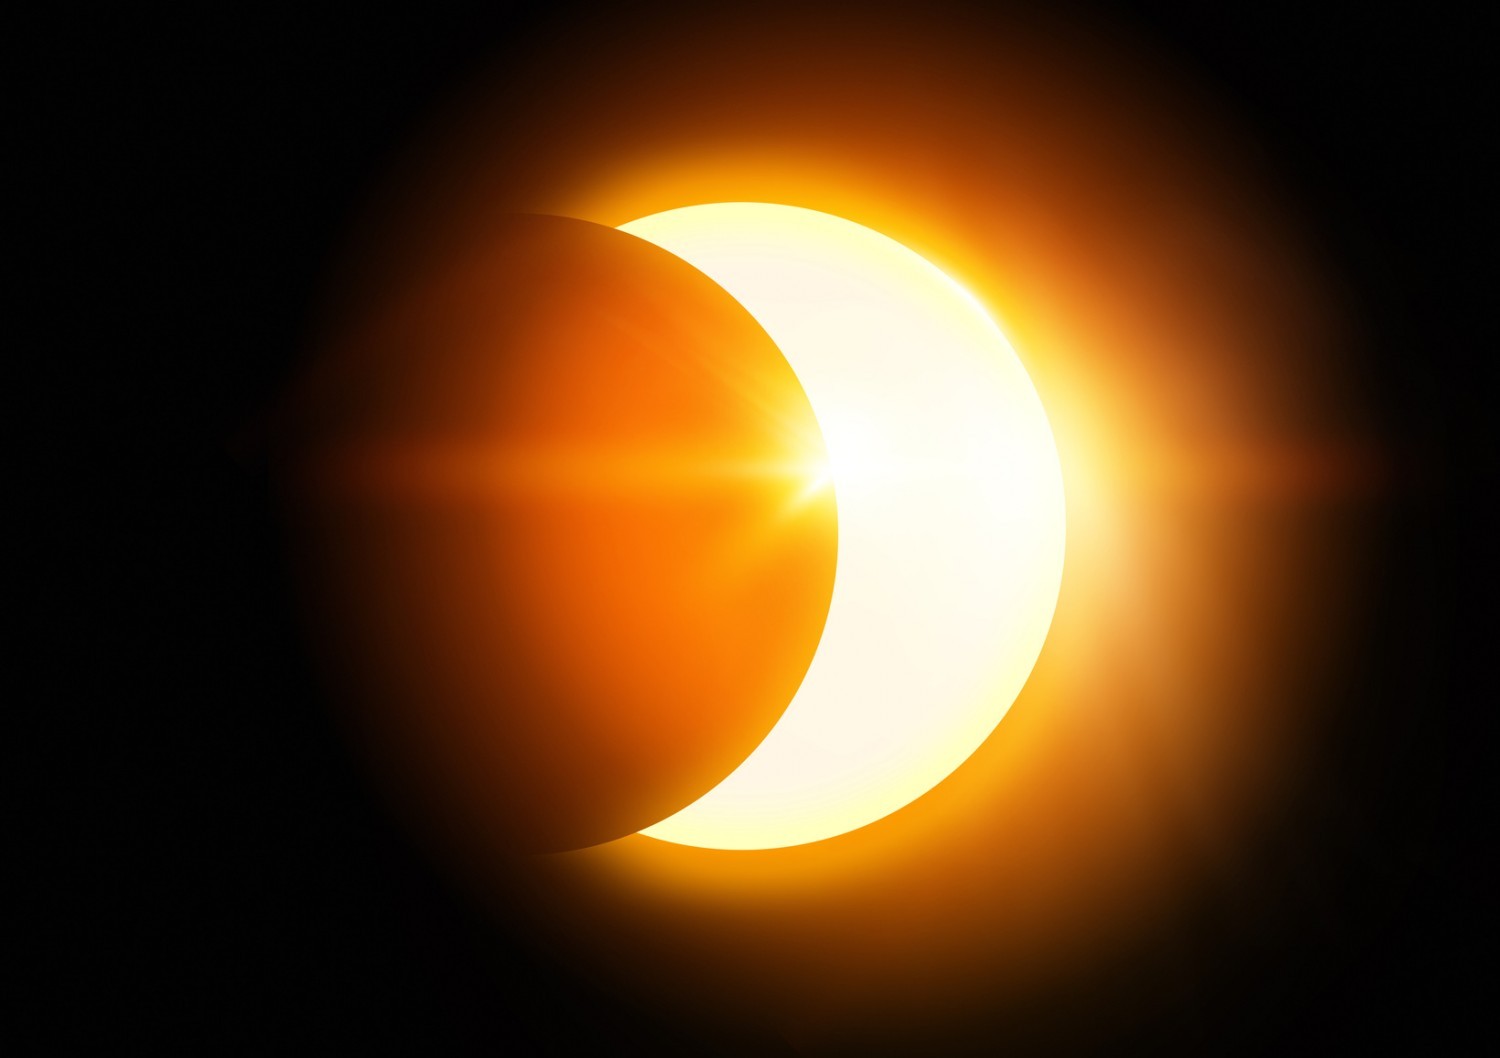 Eclipse de soleil : comment l’observer sans danger avec ses élèves ?